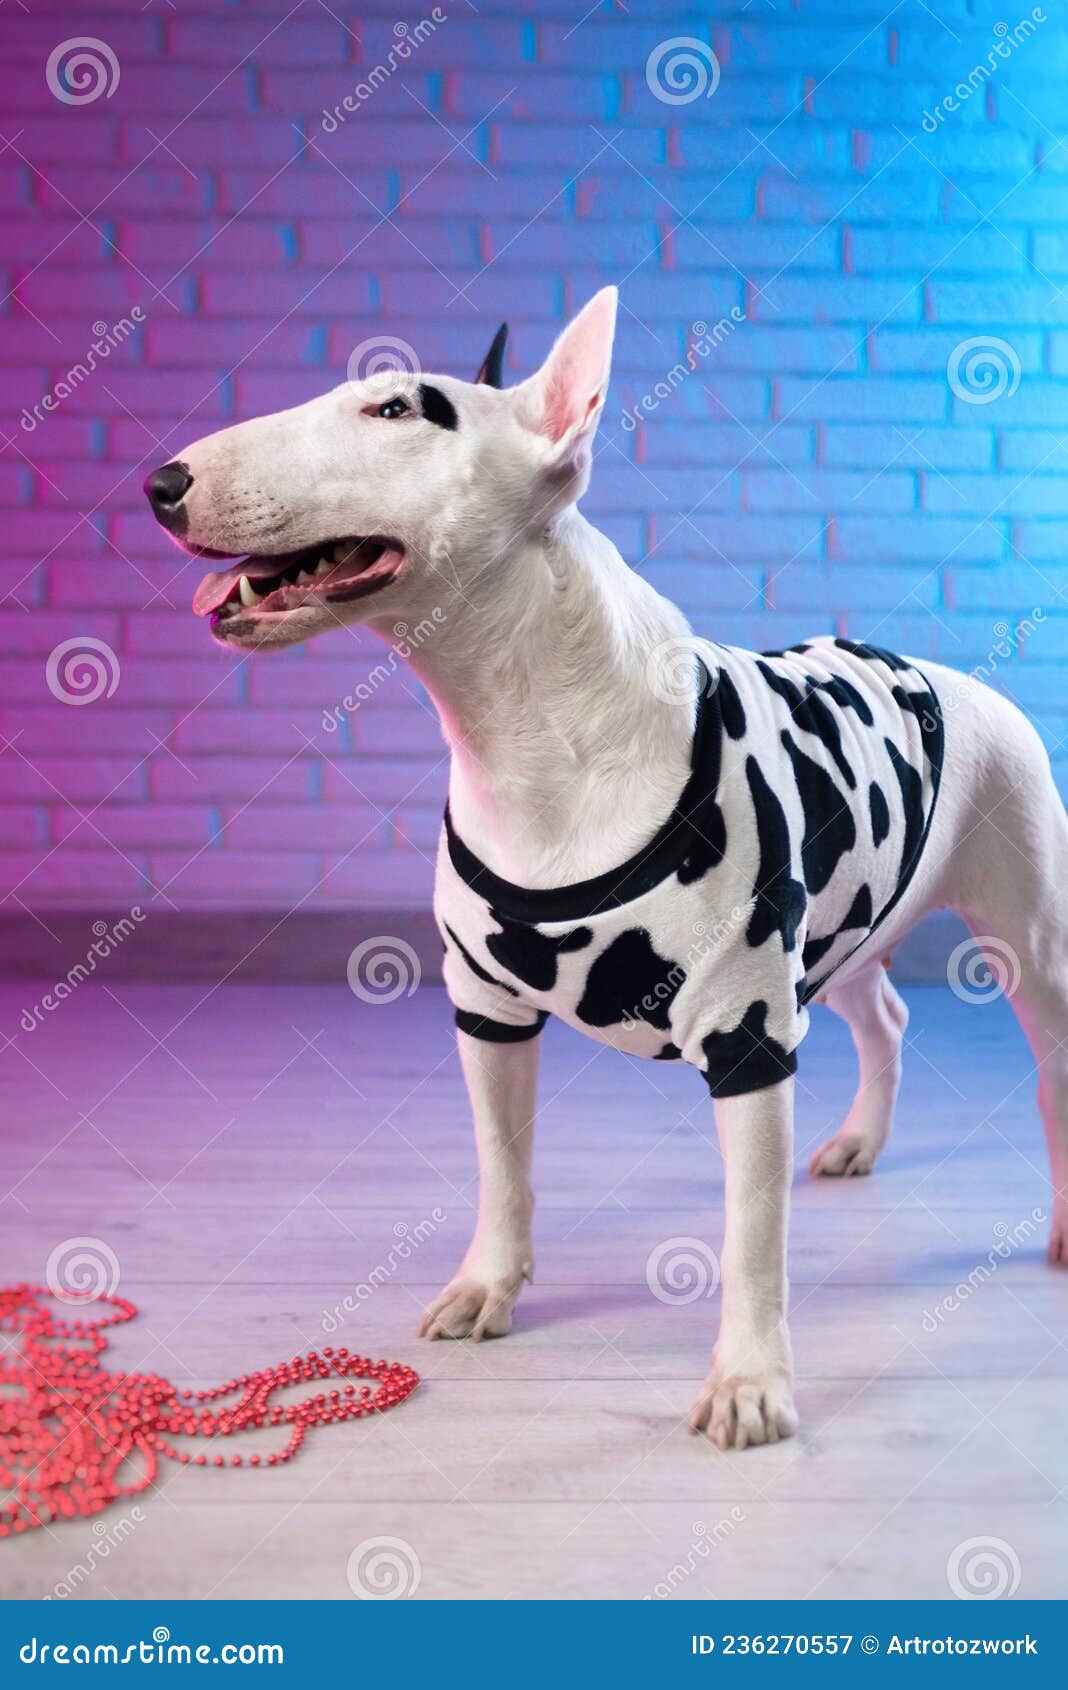 Un Bull Terrier Blanco Vestido Ropas De Perro Vistas Contra Una Pared De Ladrillo En Tonos Rosa Y Azul Neón Imagen de archivo - Imagen de estudio, aterrador: 236270557